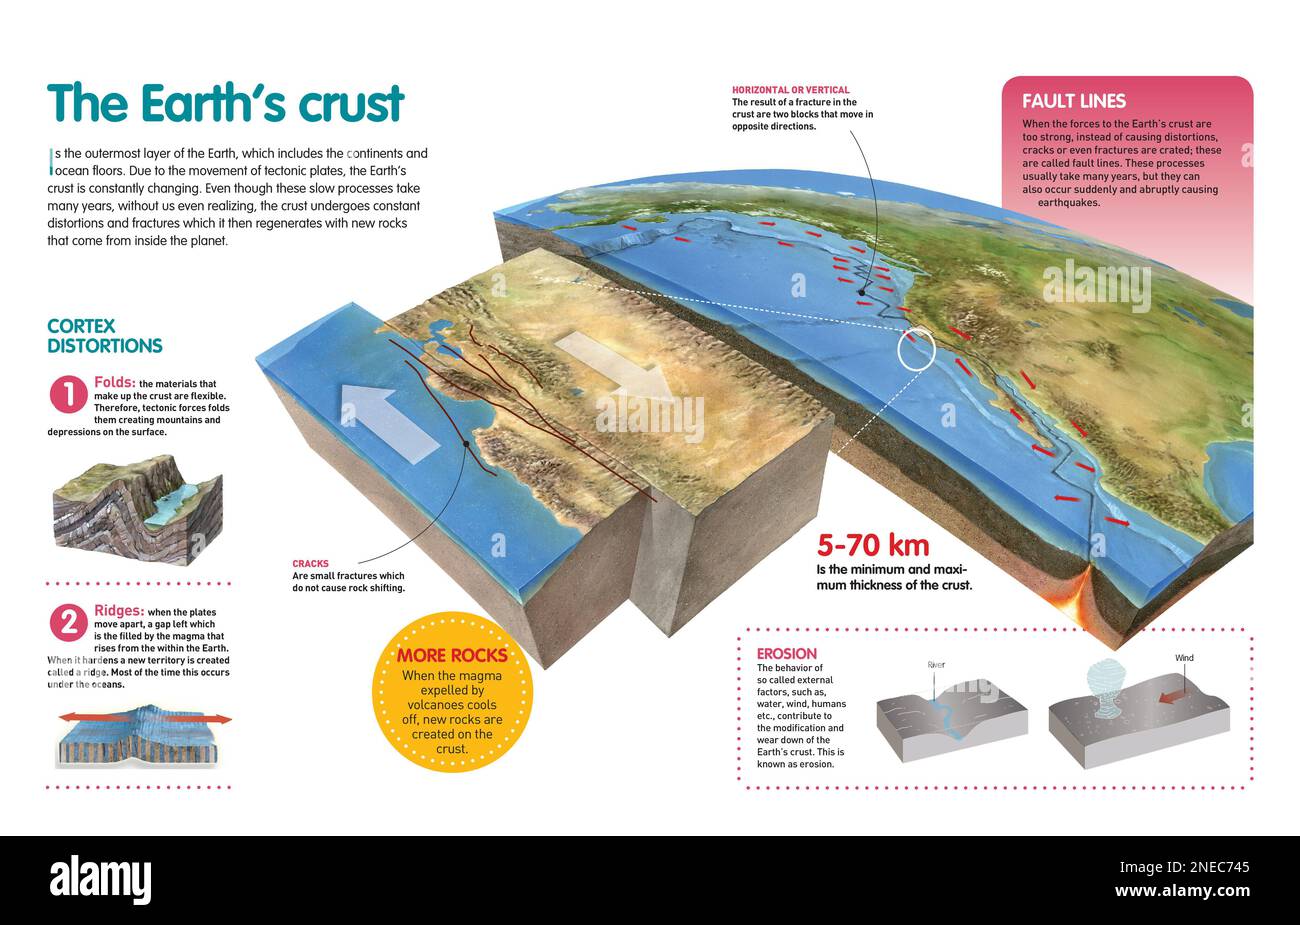 Infografica che spiega il processo di cambiamento della crosta terrestre dovuto al movimento delle lastre tettoniche. [QuarkXPress (.qxp); Adobe InDesign (.indd); 4960x3188]. Foto Stock